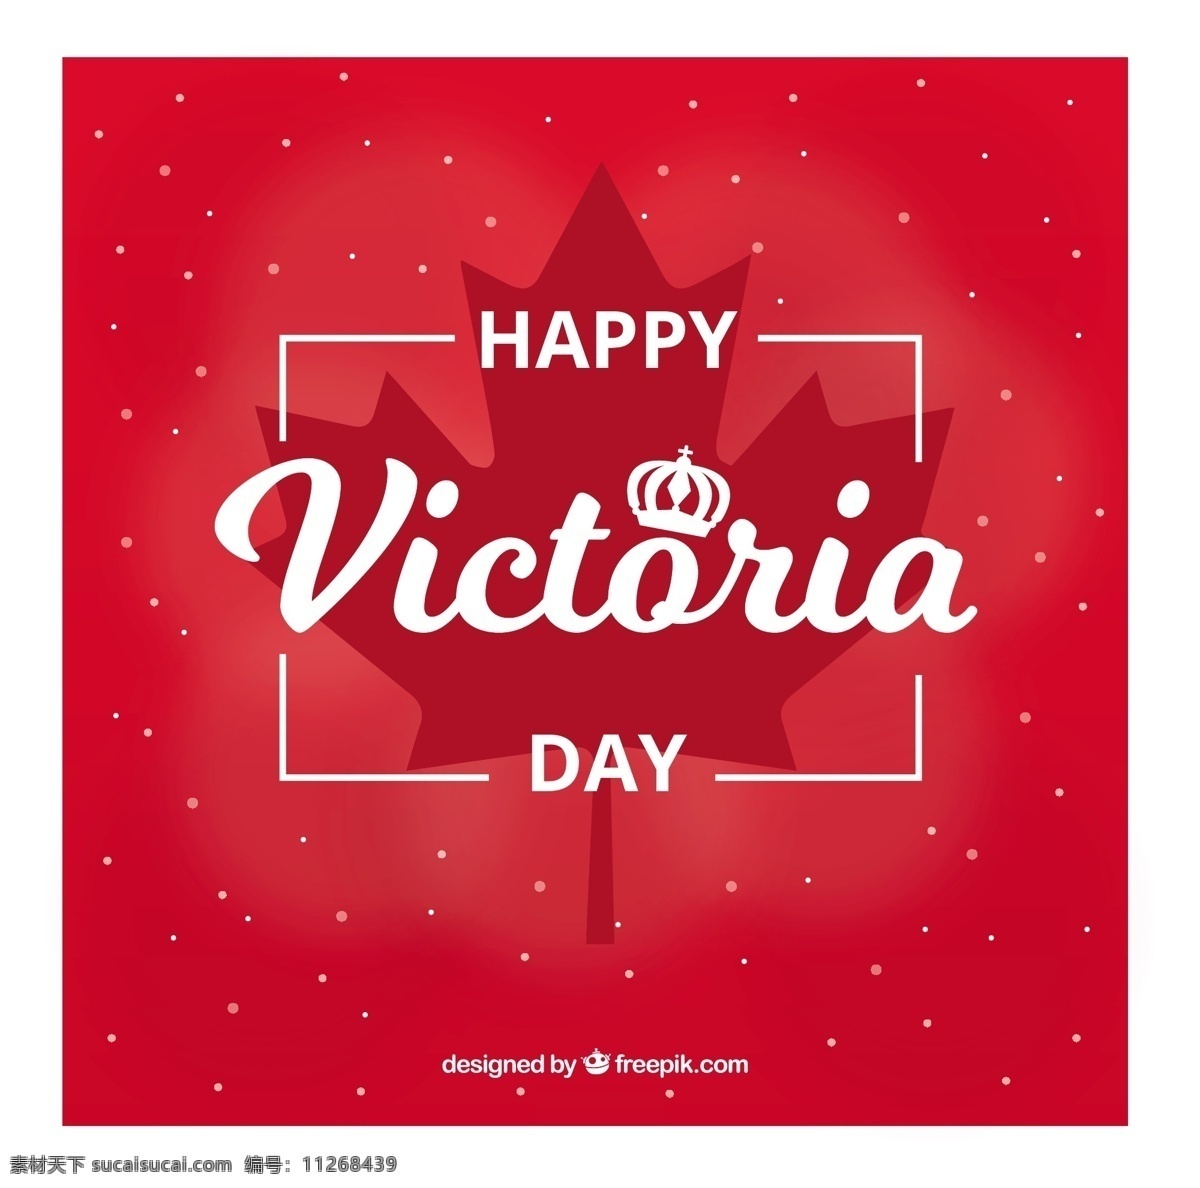 维多利亚 时代 背景 红叶 生日 树叶 红色 国旗 焰火 假日 女王 加拿大 白天 星期一 游行 君主 君主政体